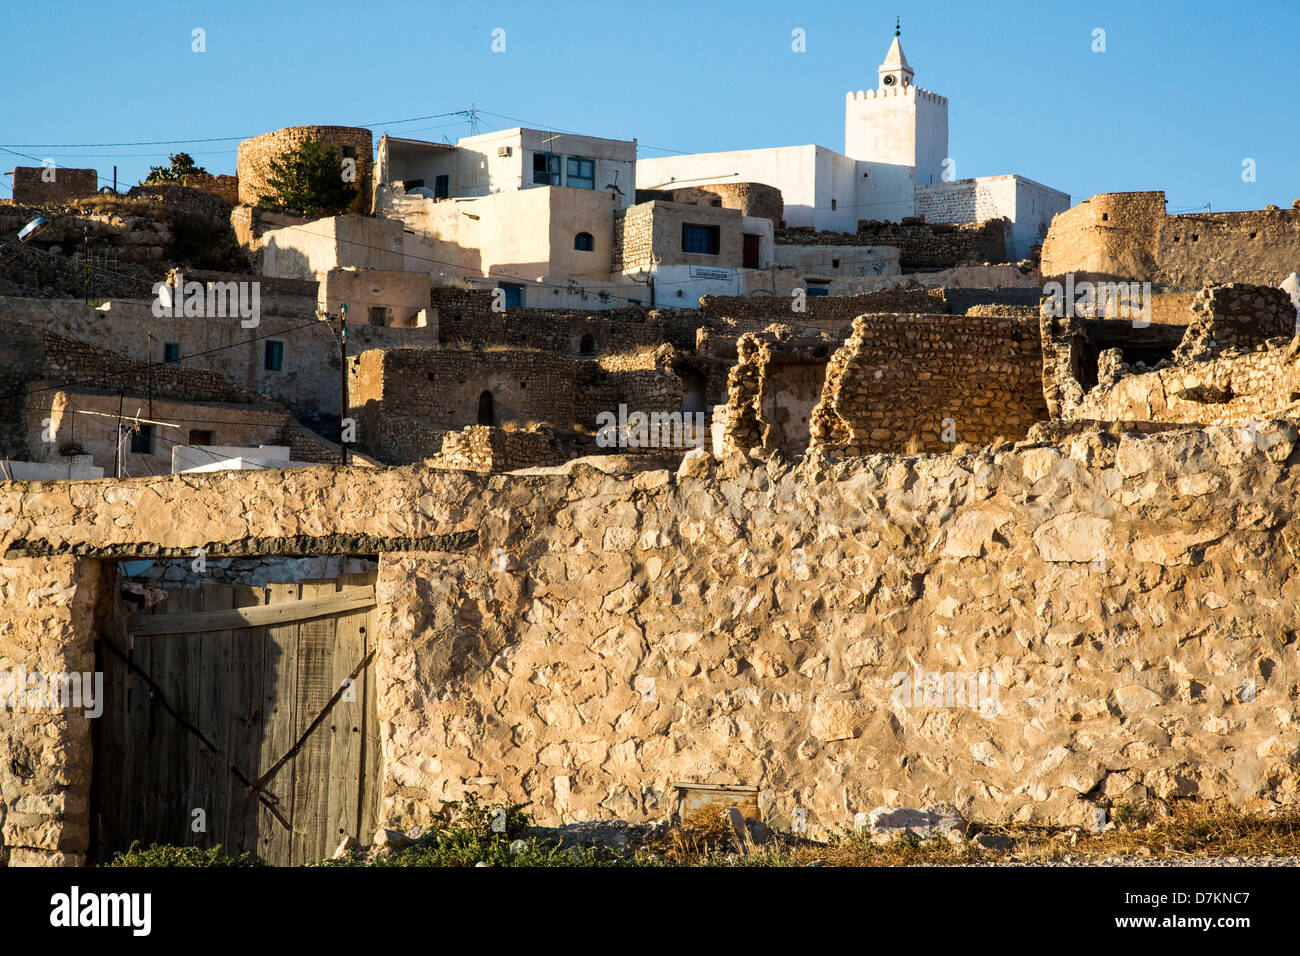 Village de Tamezret Matmata, près de la Tunisie Banque D'Images